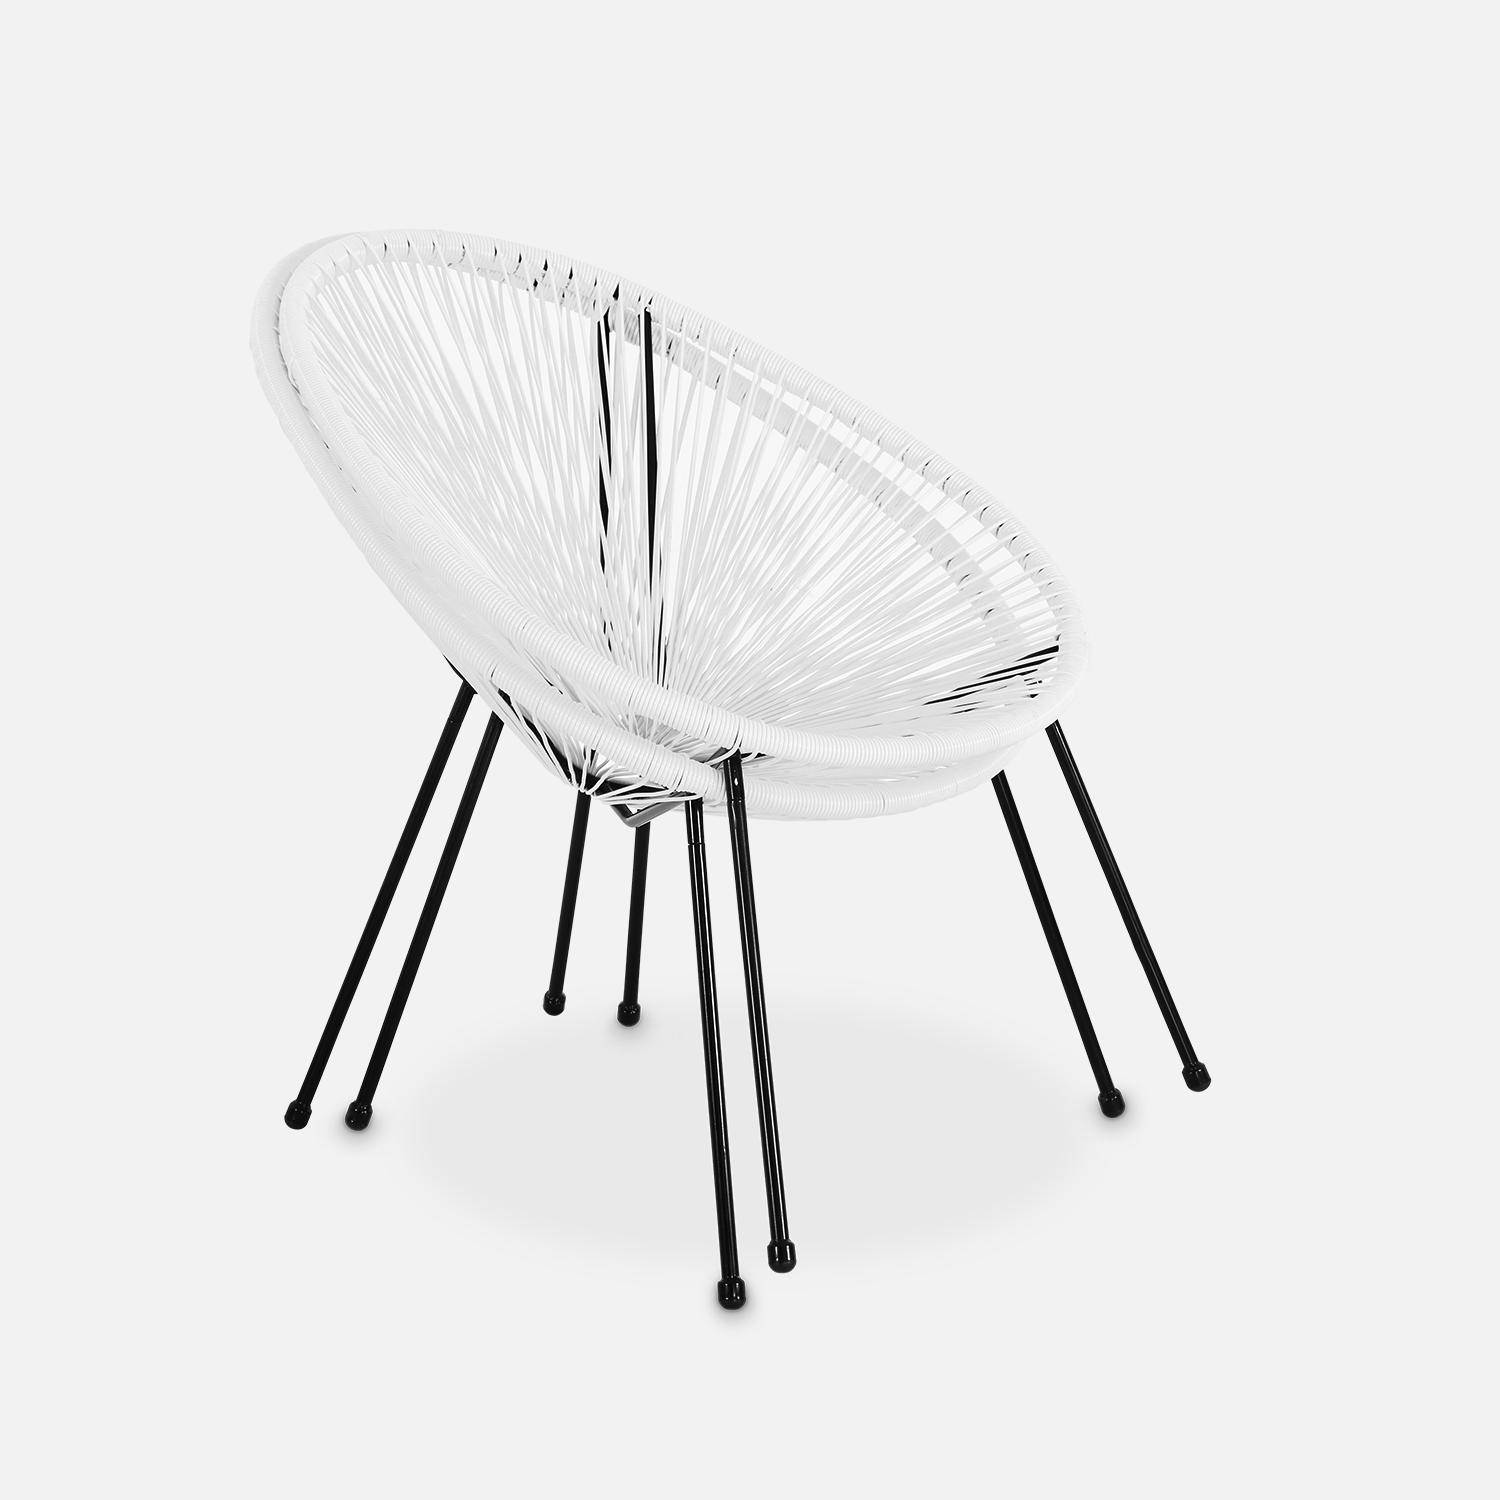 Lot de 2 fauteuils design Oeuf - Acapulco Blanc - Fauteuils 4 pieds design rétro, cordage plastique, intérieur / extérieur Photo5